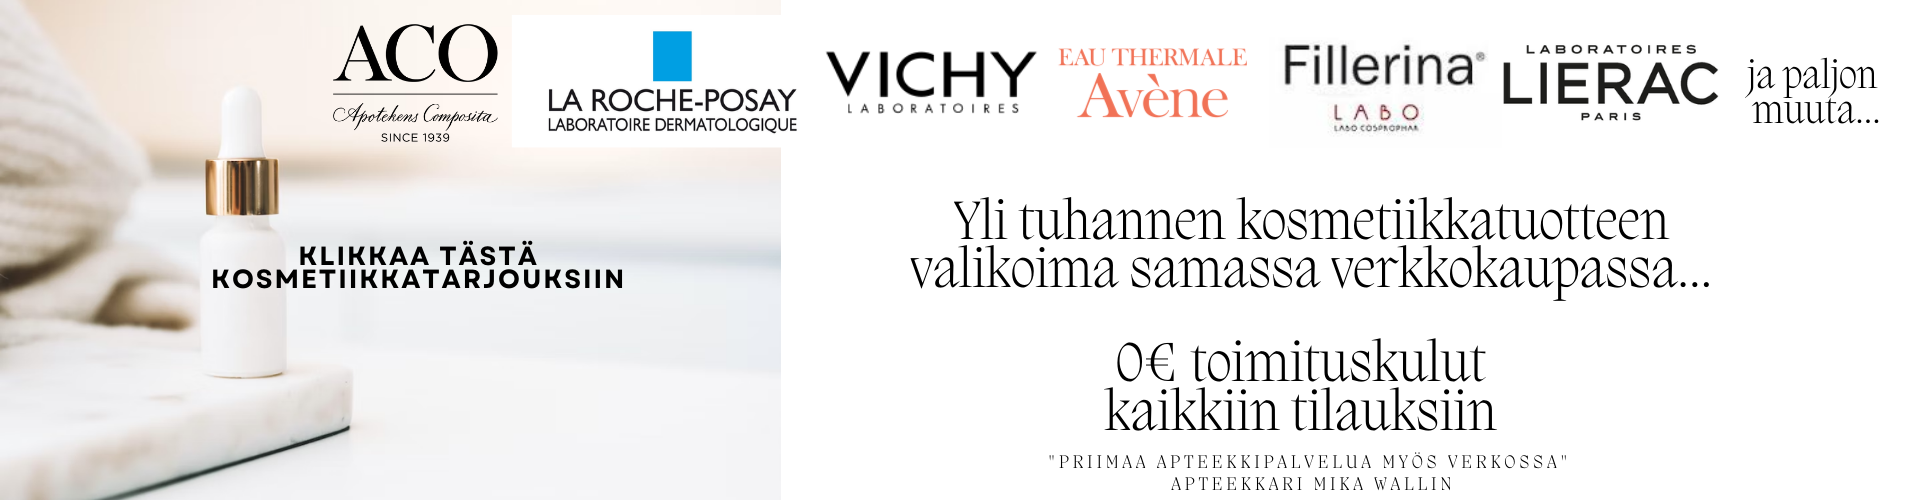 Vichy Avene Aco kosmetiikkatarjoukset apteekkiverkkokauppa